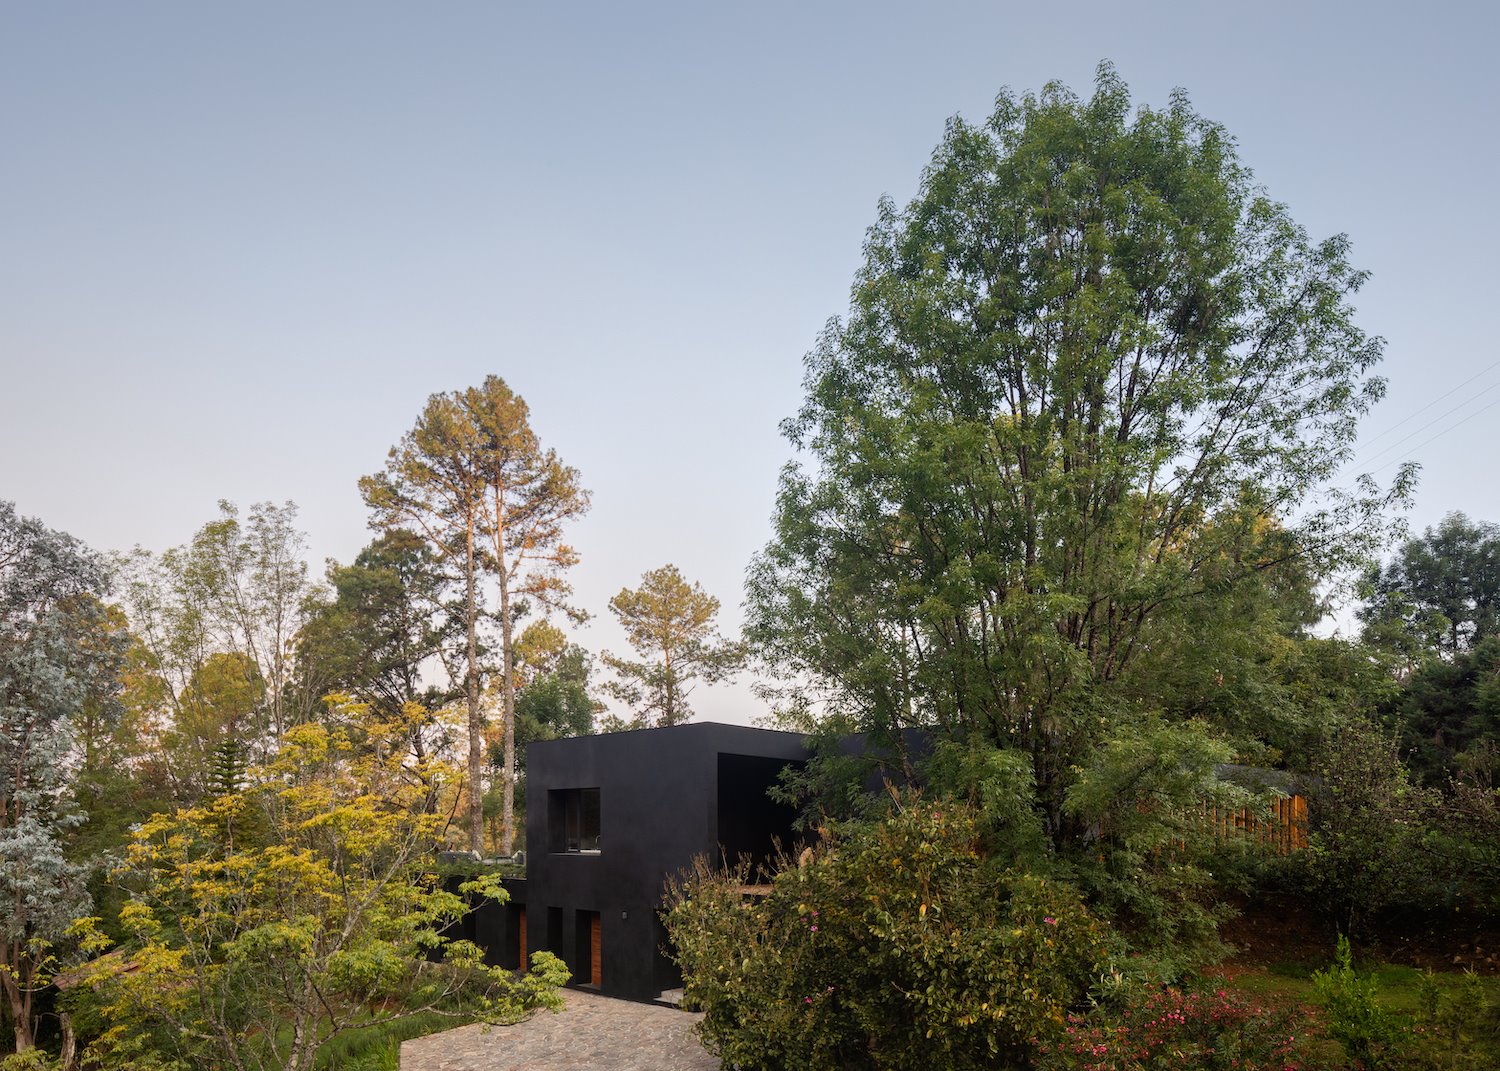 Casa en mitad del bosque con fachada de color negro